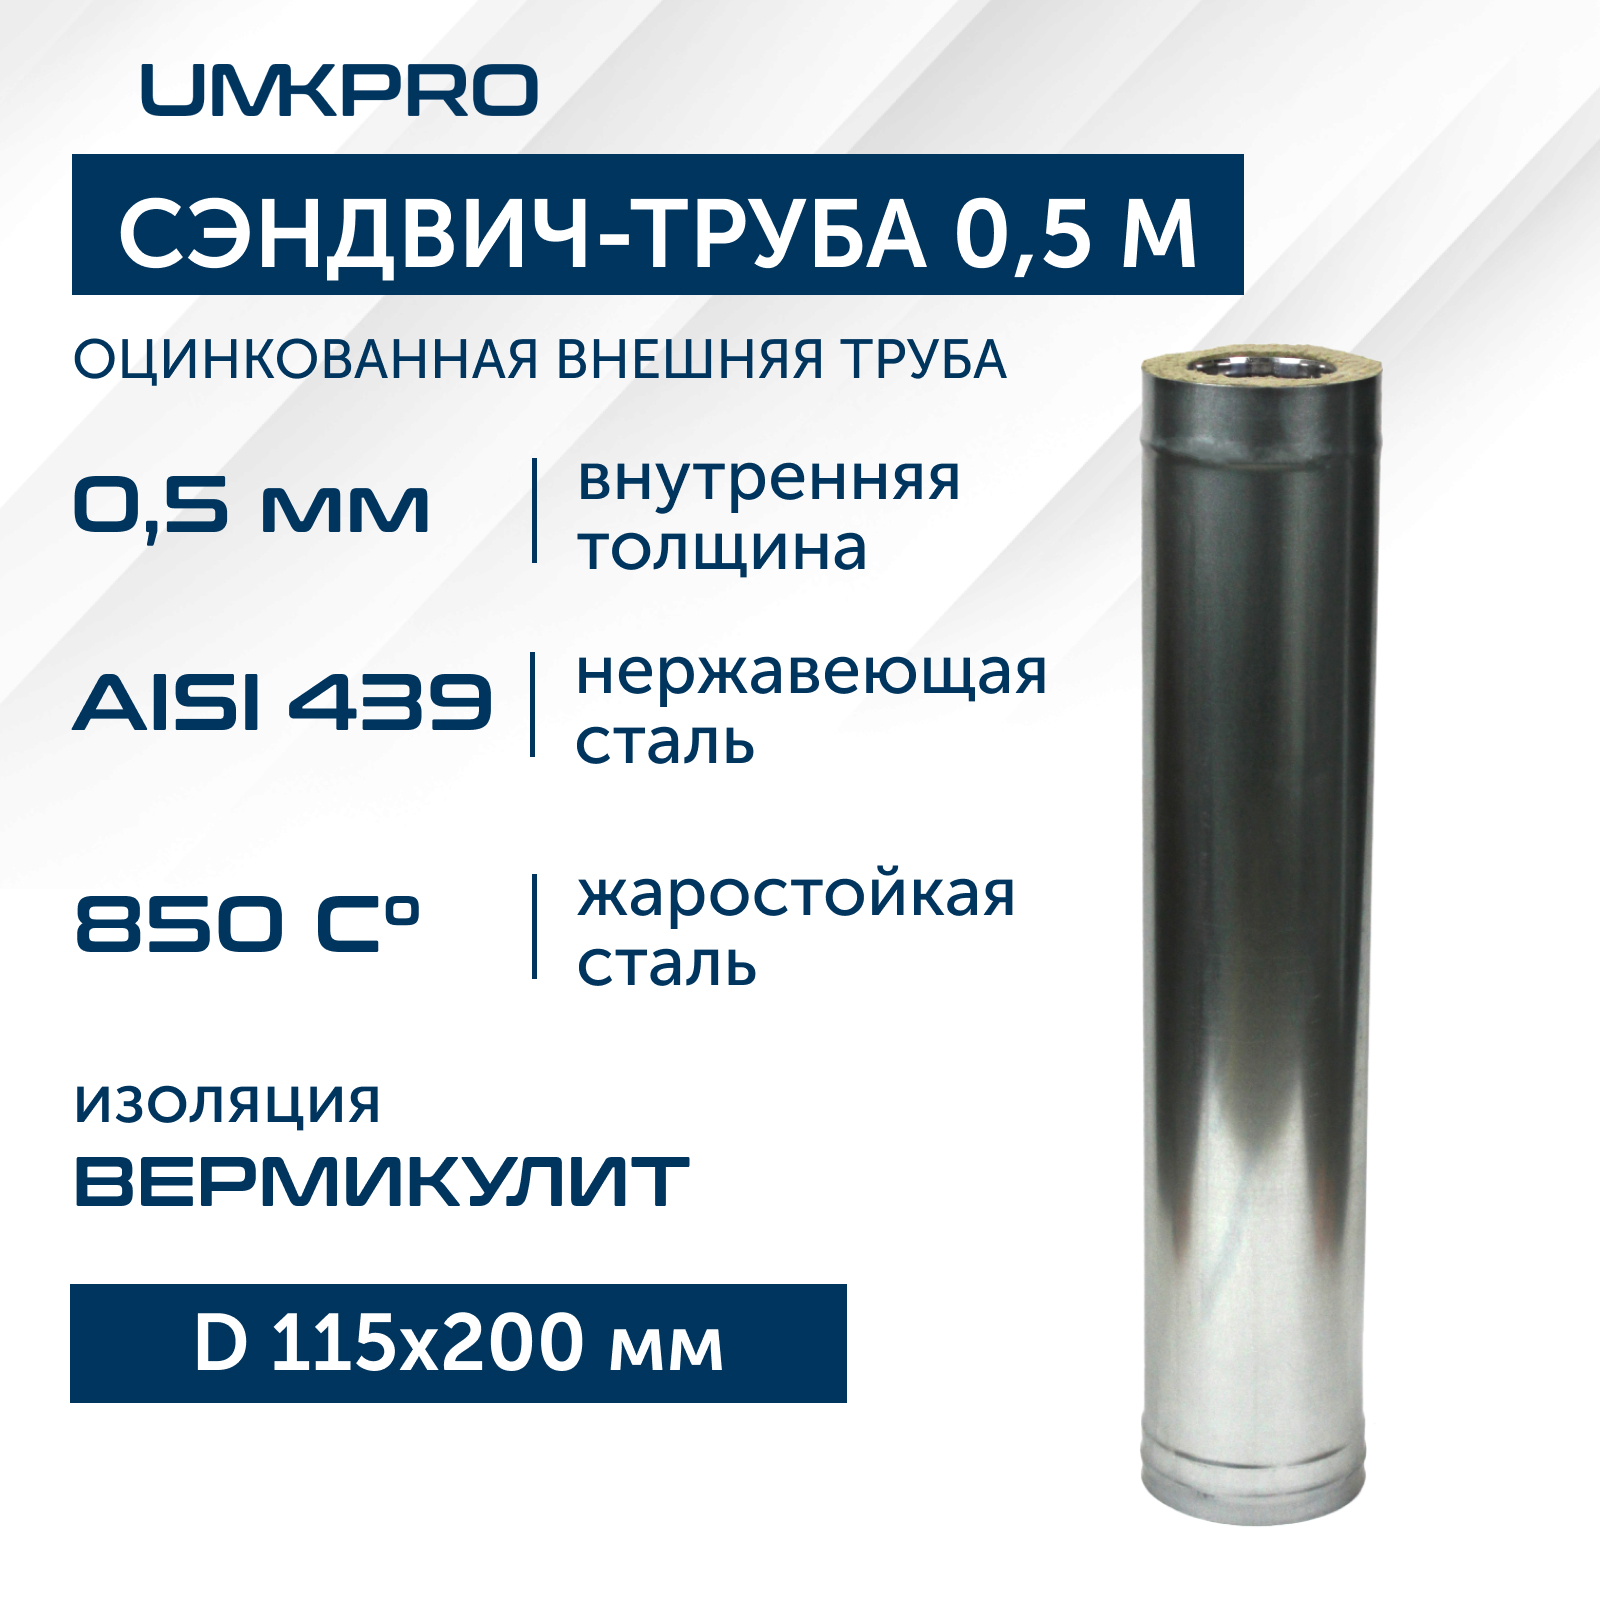 фото Сэндвич-труба umkpro для дымохода 0,5 м d 115х200 aisi 439/оц 0,5мм/0,5мм